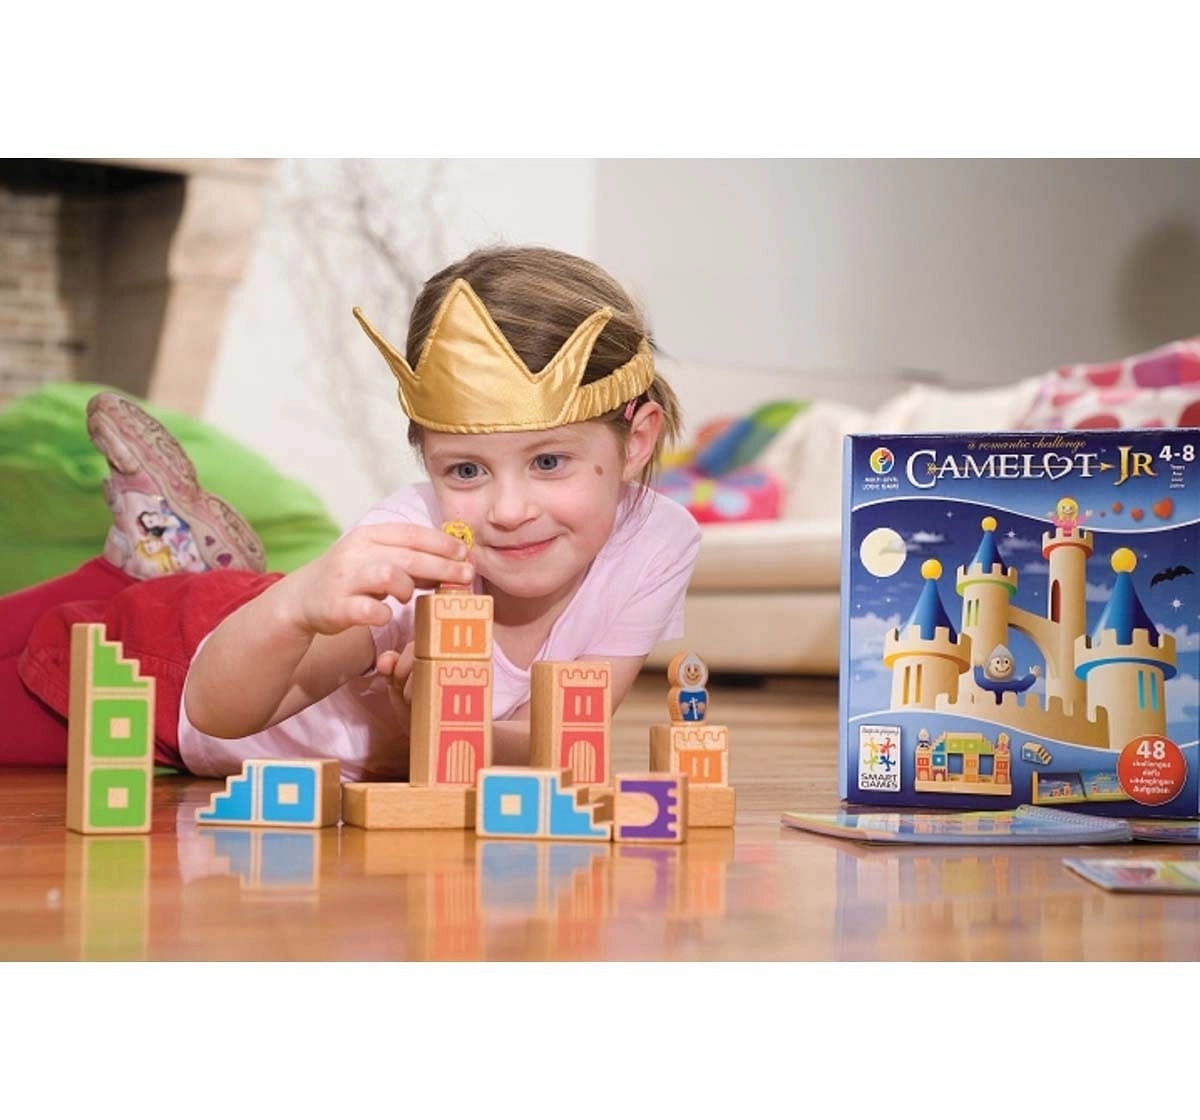 Smart Games Camelot Jr. for Kids age 4Y+ 